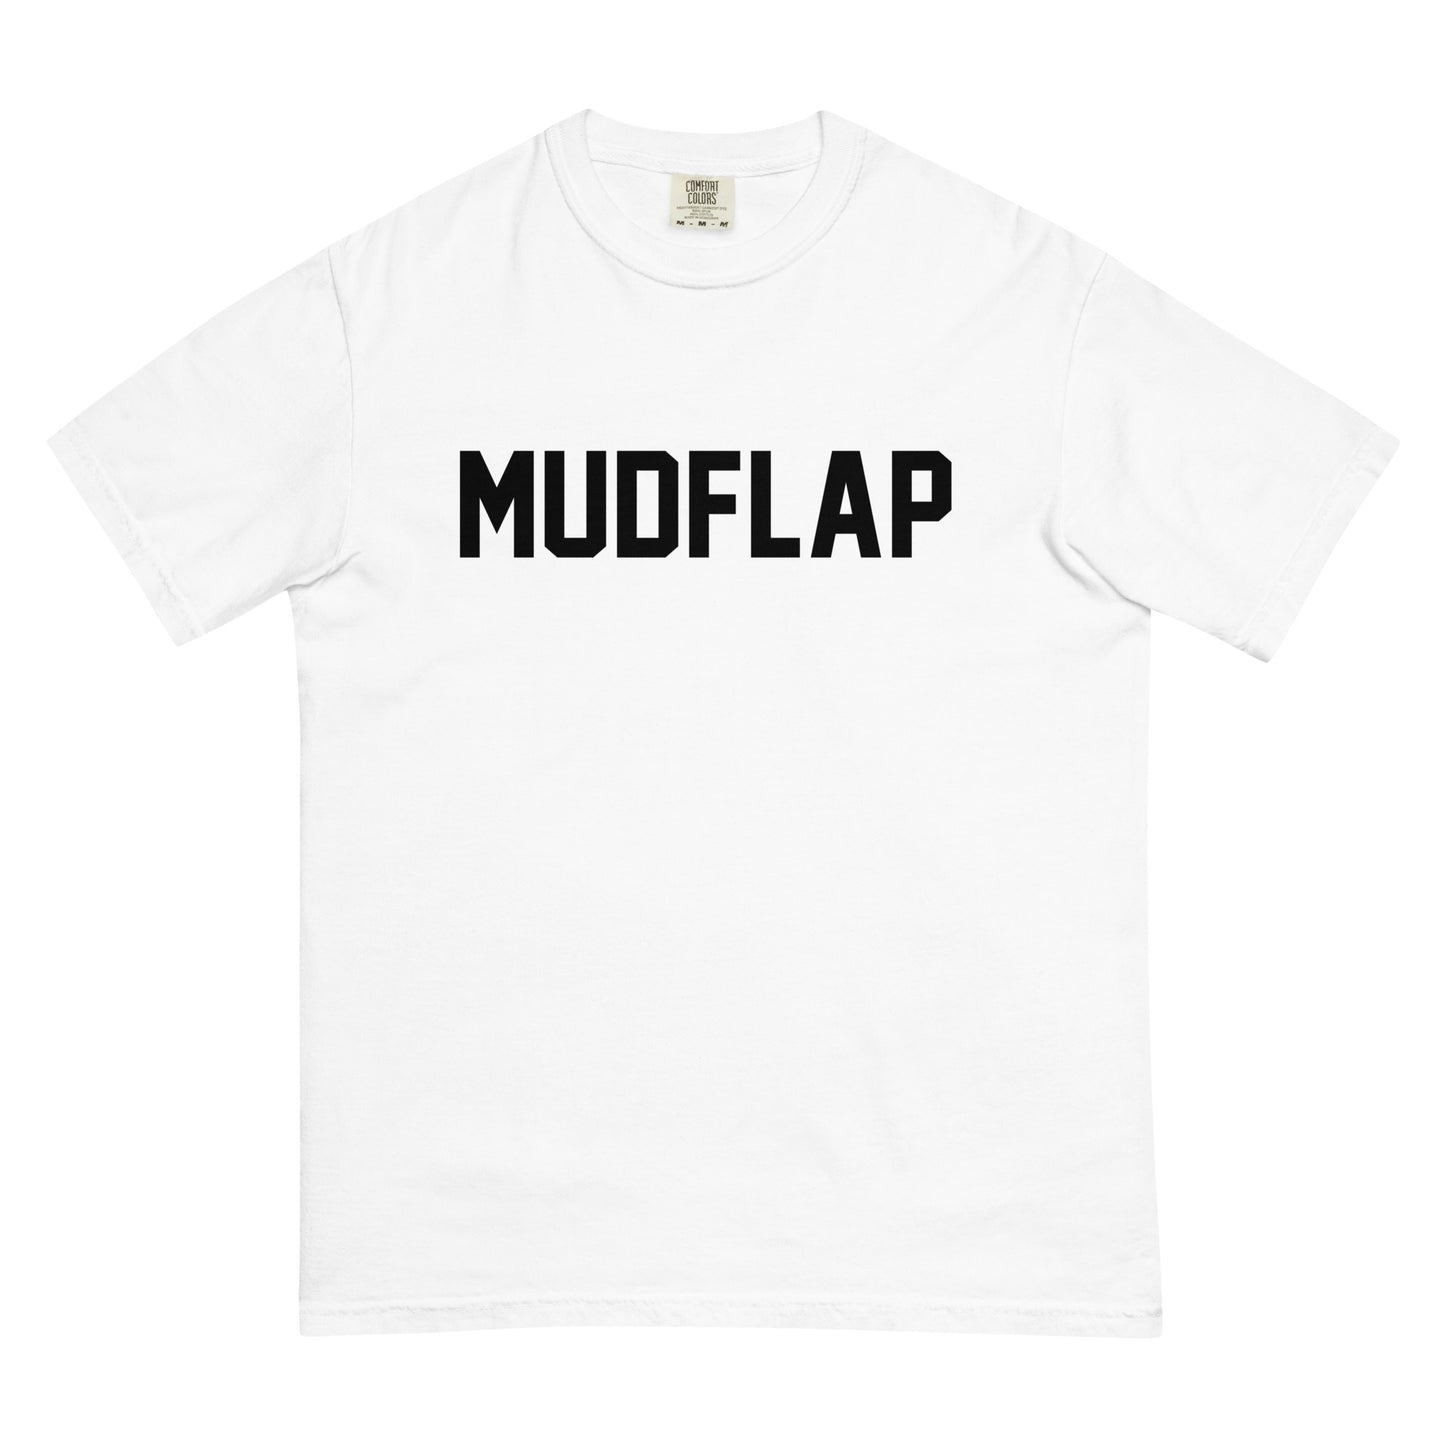 MUDFLAP